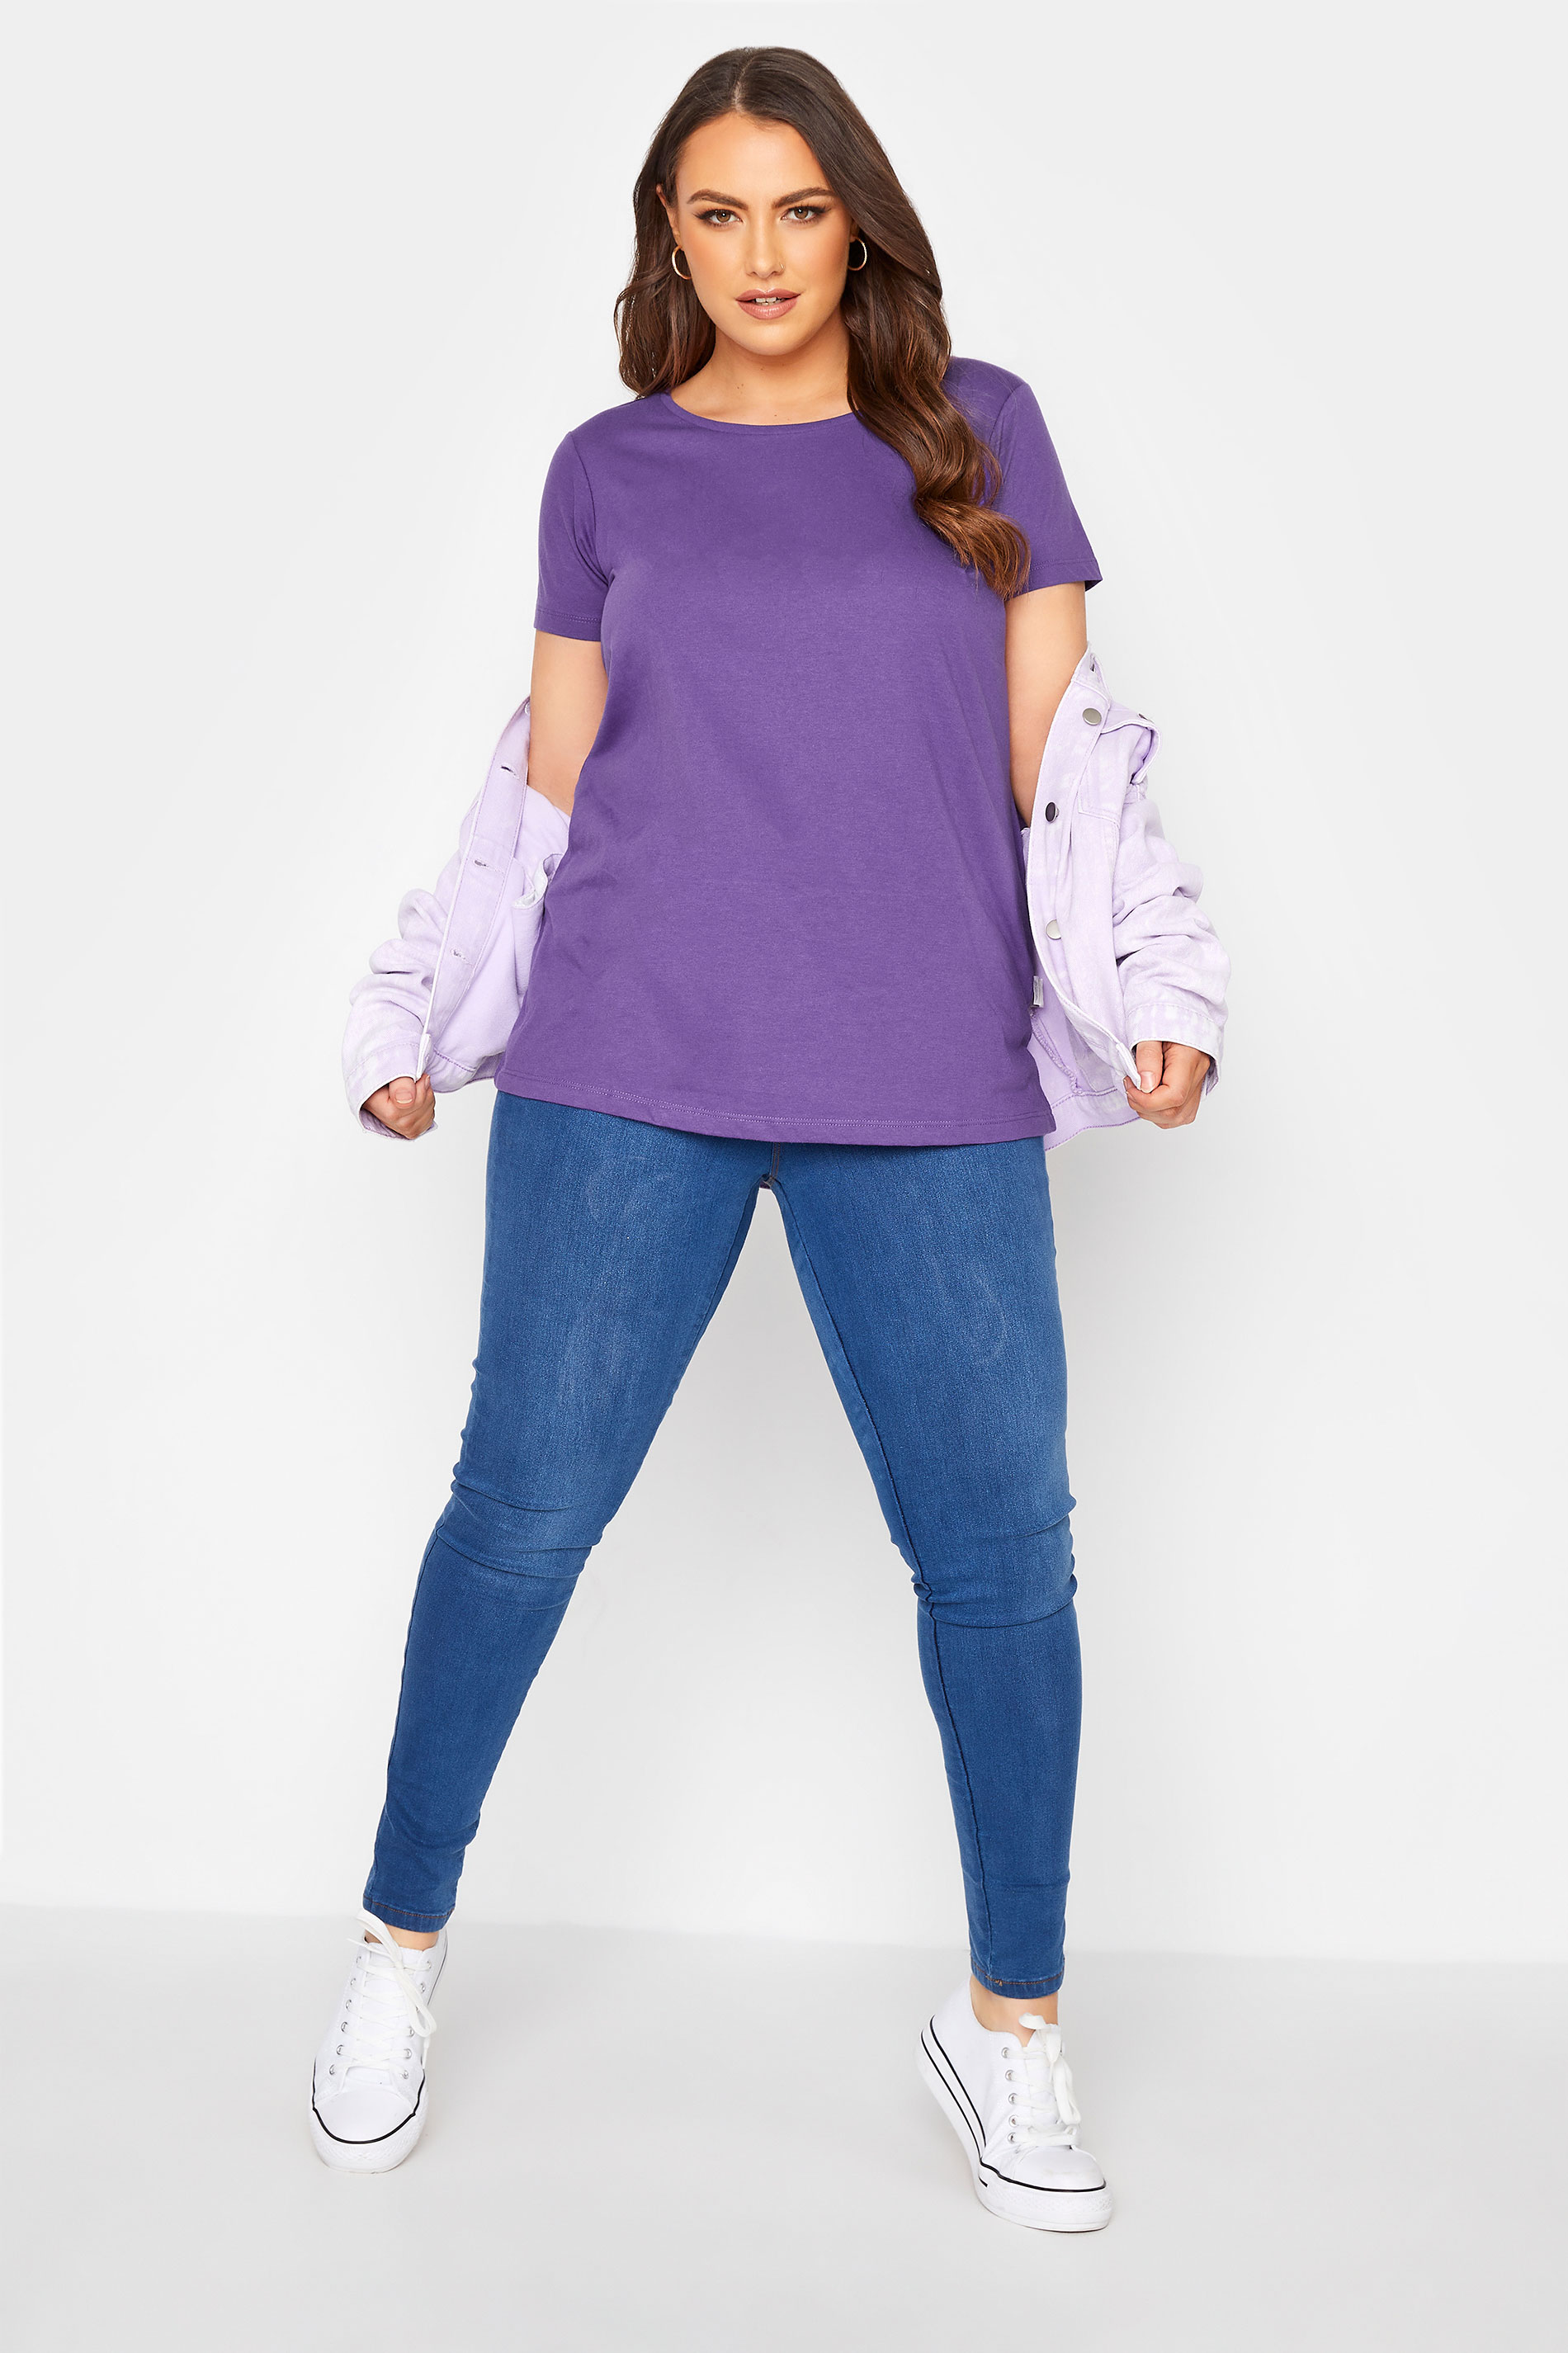 Grande taille  Tops Grande taille  T-Shirts Basiques & Débardeurs | T-Shirt Violet en Jersey - RB44889